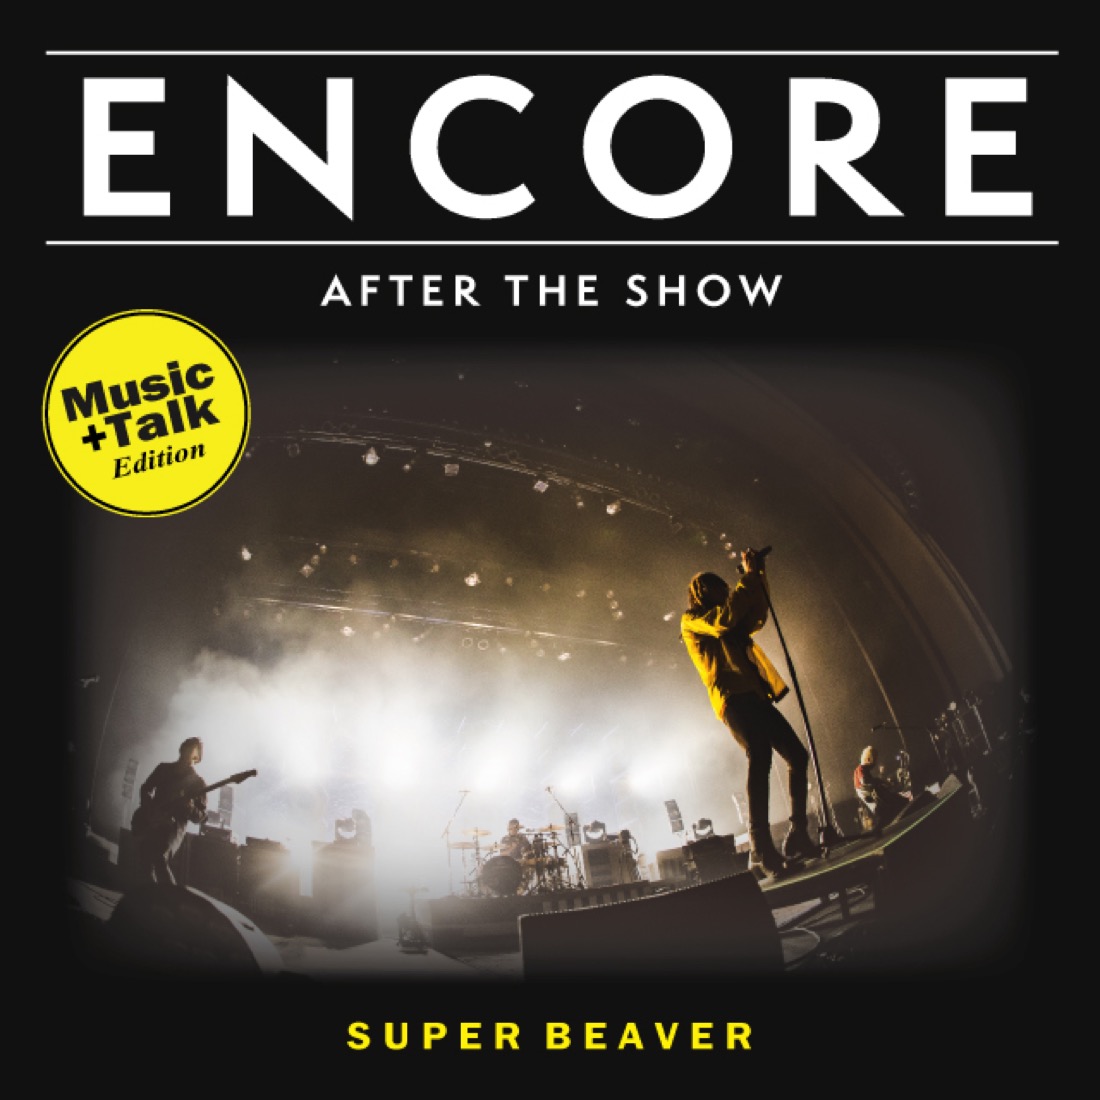 第1弾はSUPER BEAVER！ 更新型プレイリスト『ENCORE』に“Music+Talk Edition-”が登場